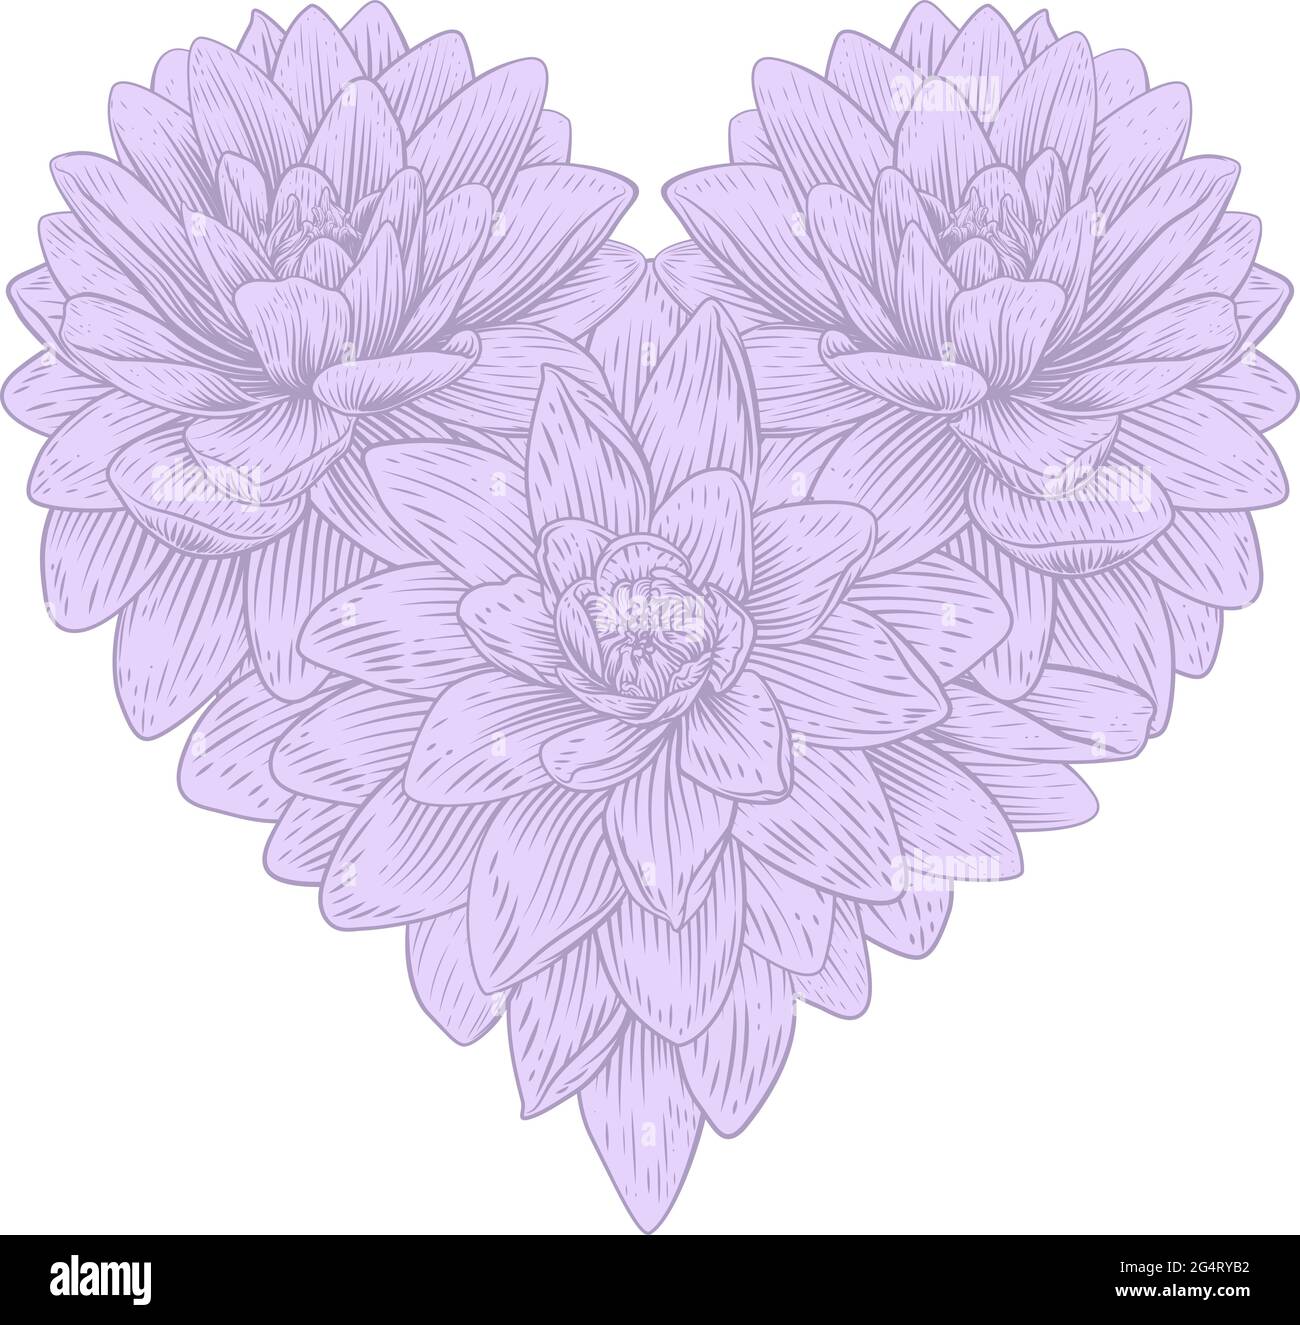 Coeur Lotus fleur amour Floral Lilly Etching Illustration de Vecteur